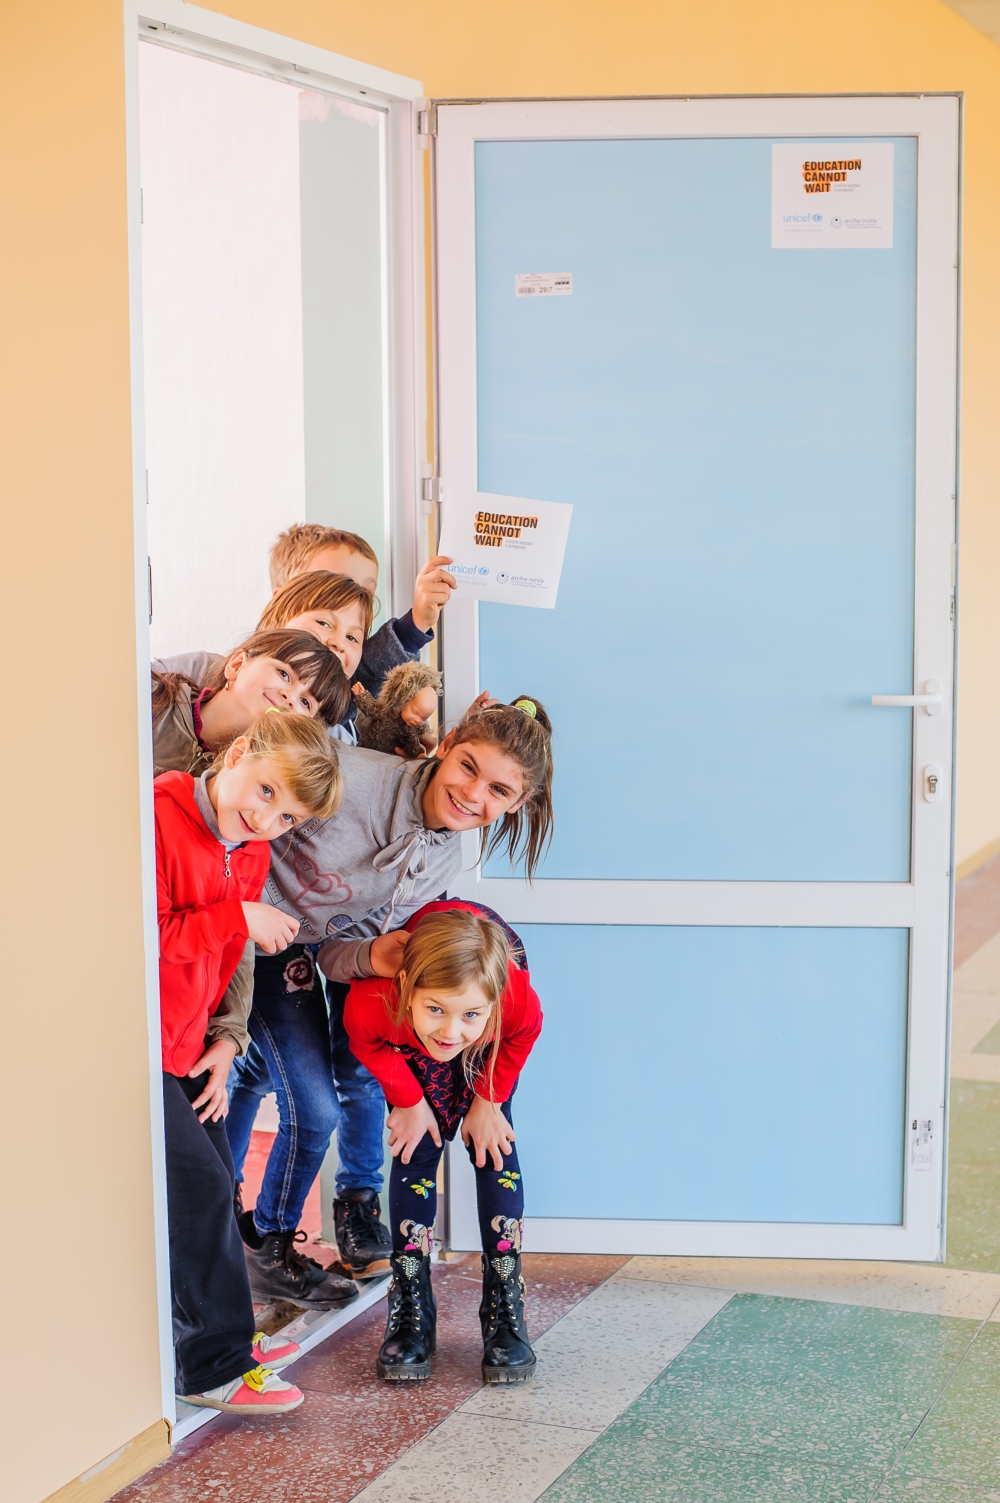 Mehrere Kinder gucken lächelnd zur Tür hinein